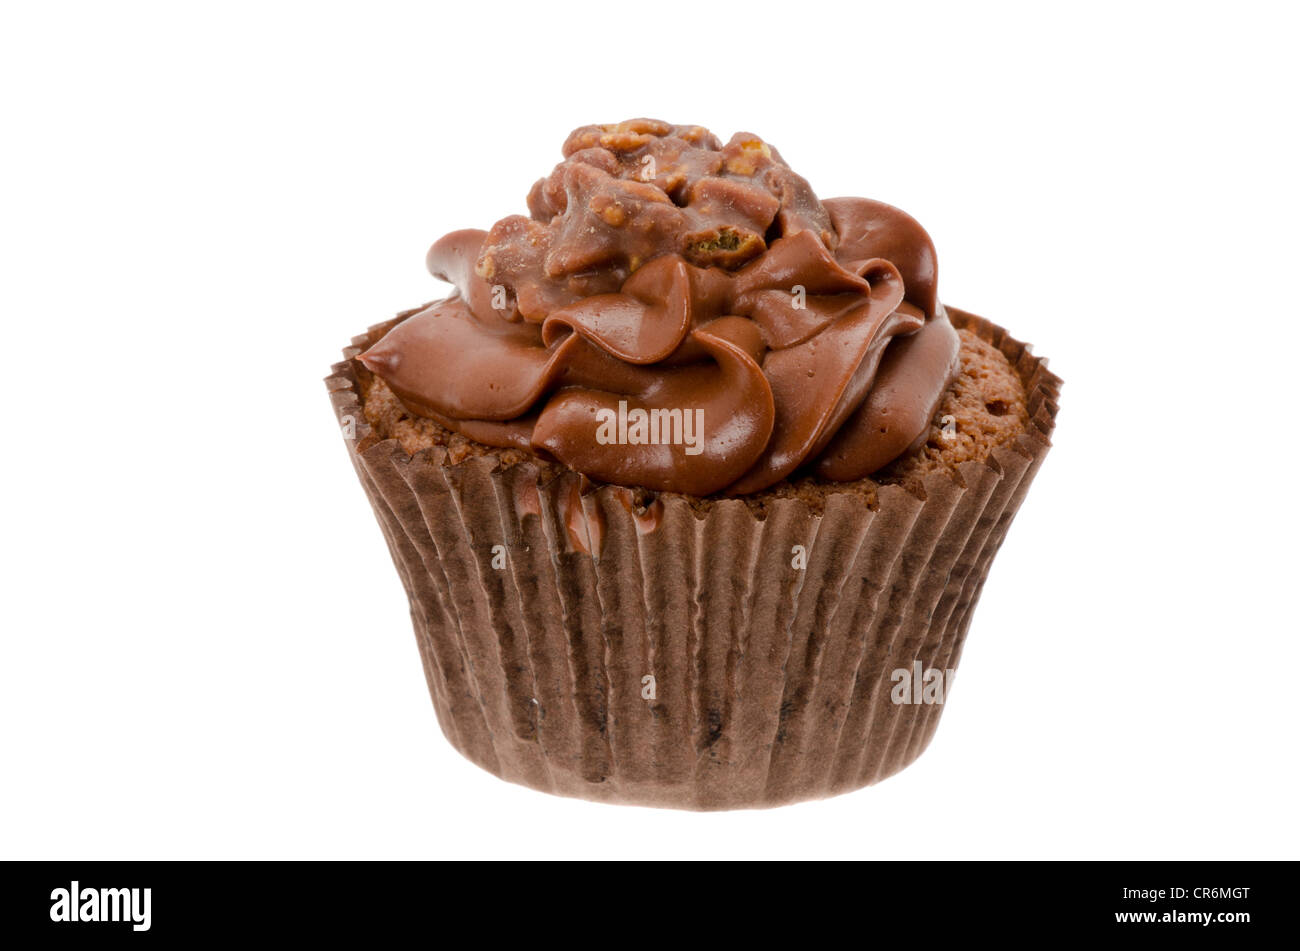 Cupcake au chocolat avec un glaçage au chocolat au lait - décoration studio shot avec un fond blanc Banque D'Images